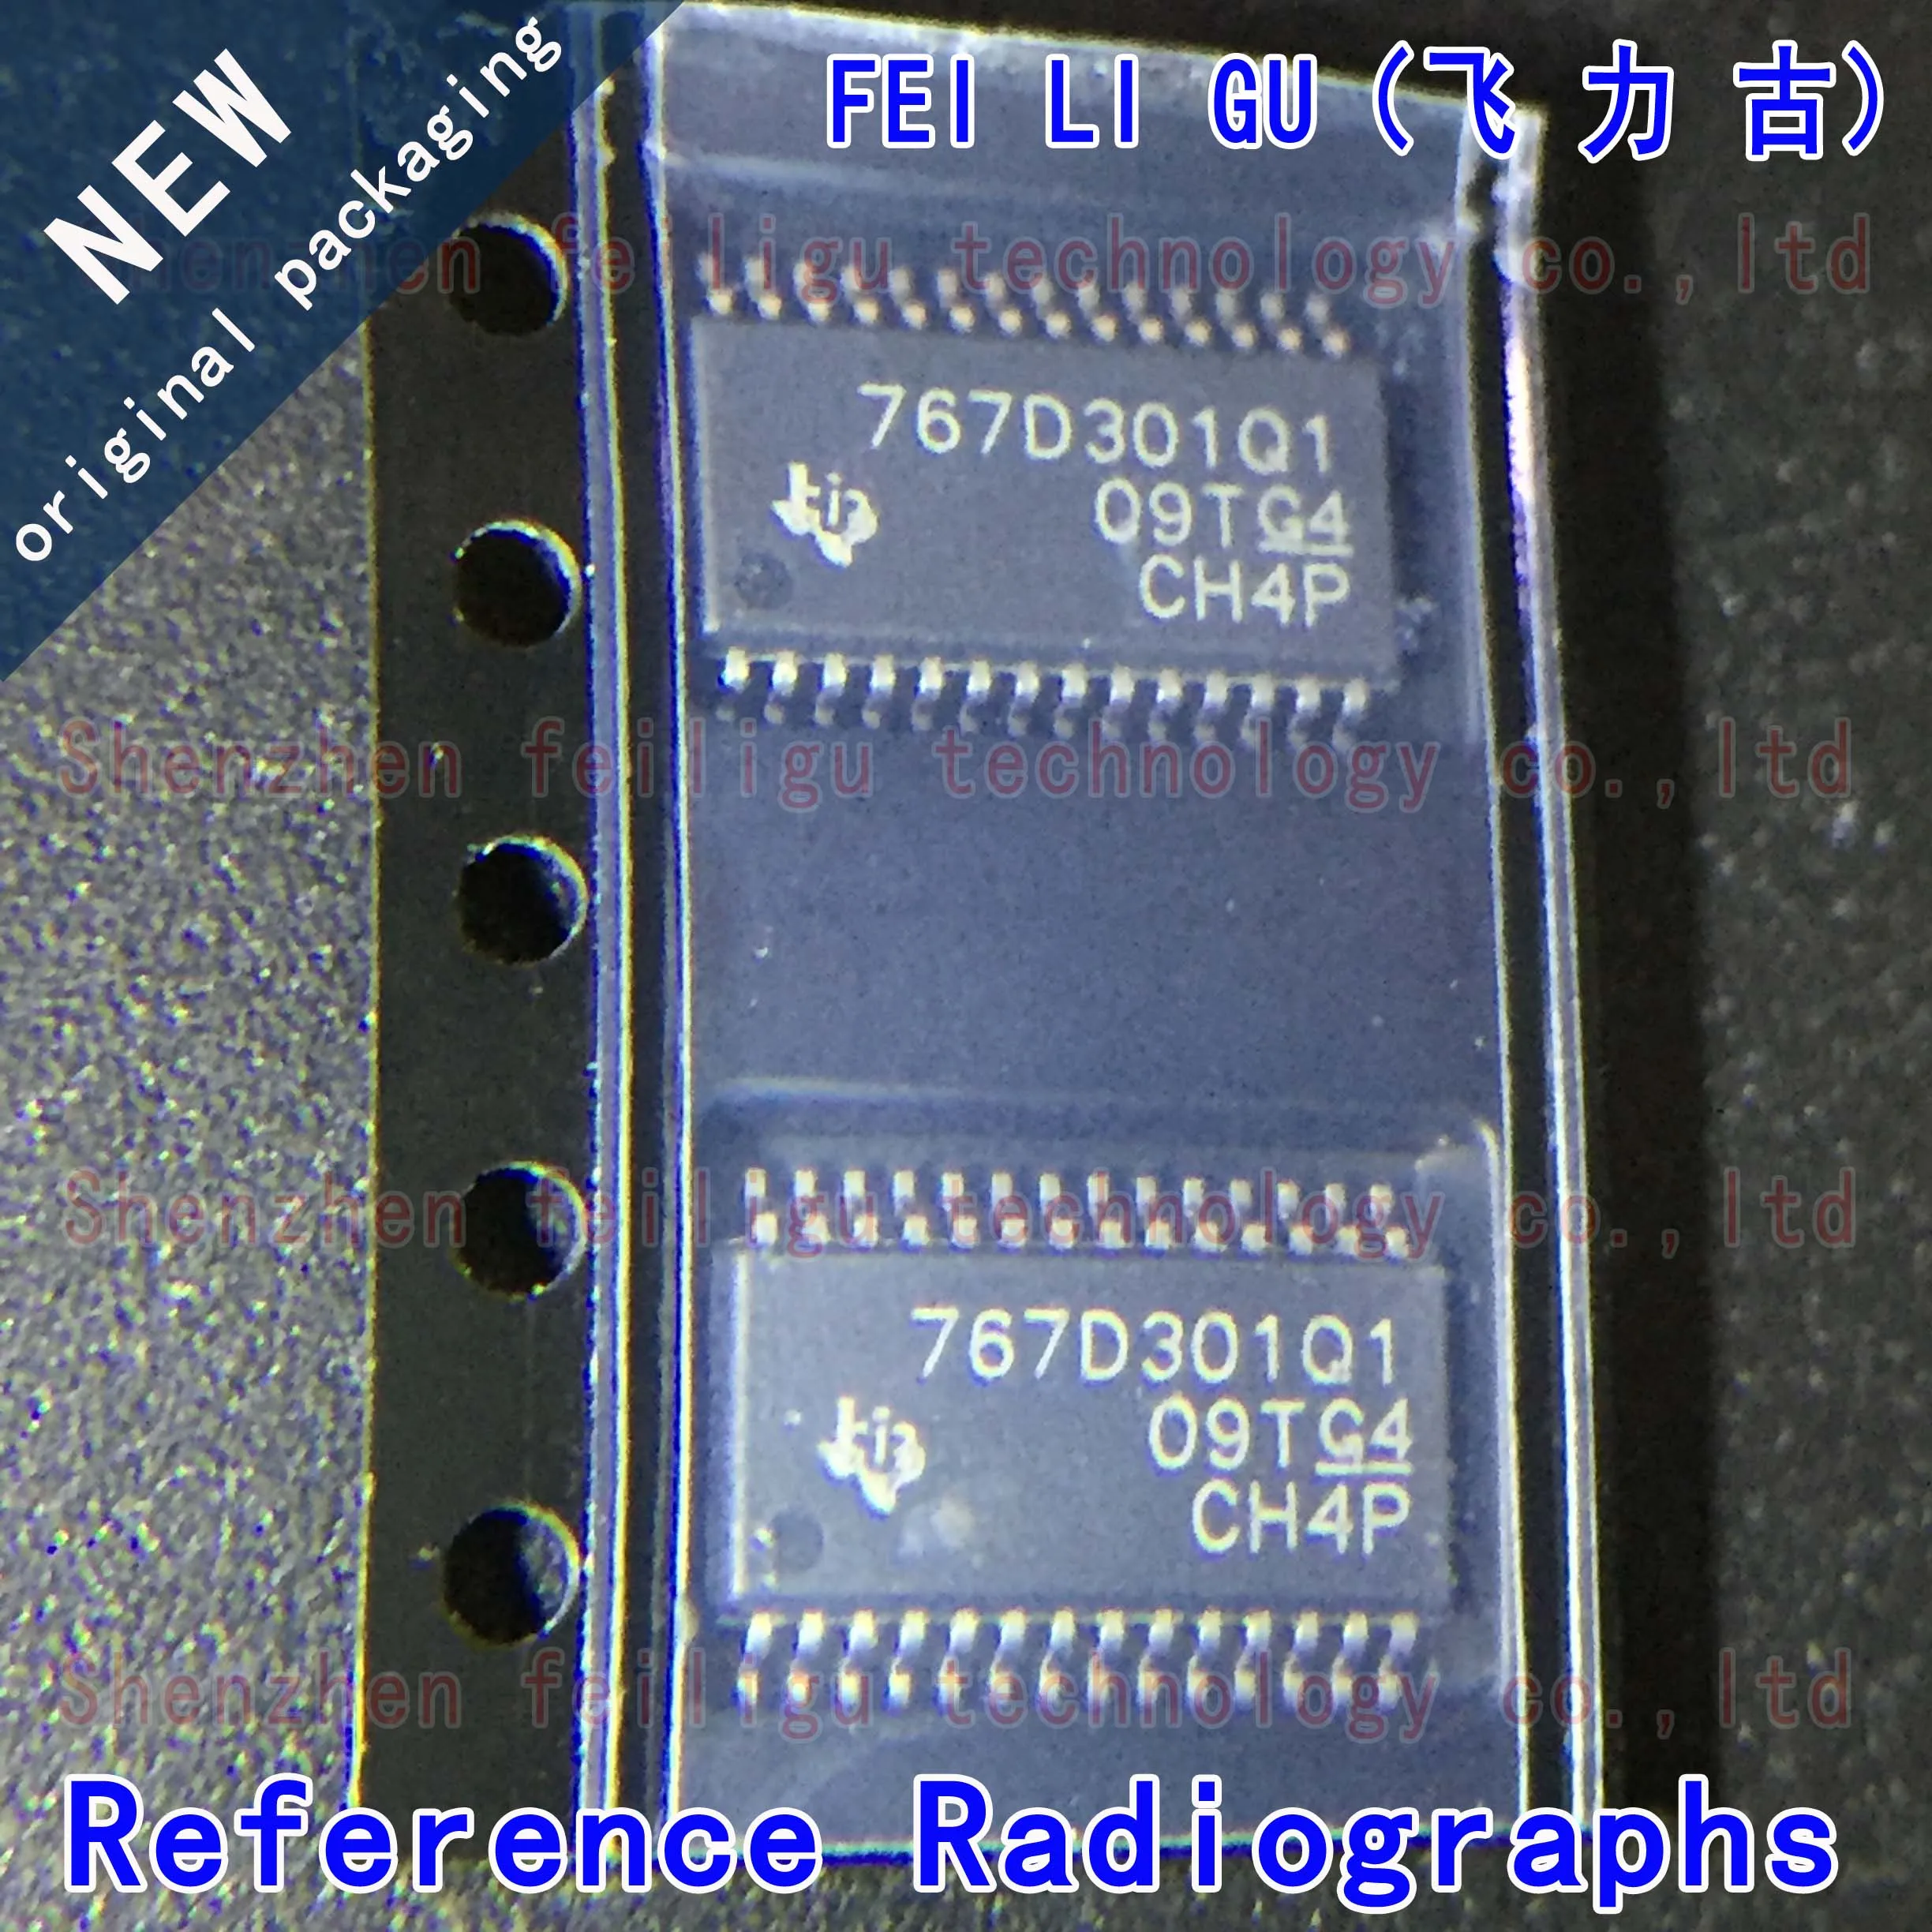 100% New original TPS767D301QPWPRQ1 767D301Q1 package: HTSSOP28 automotive dual output low dropout regulator chip